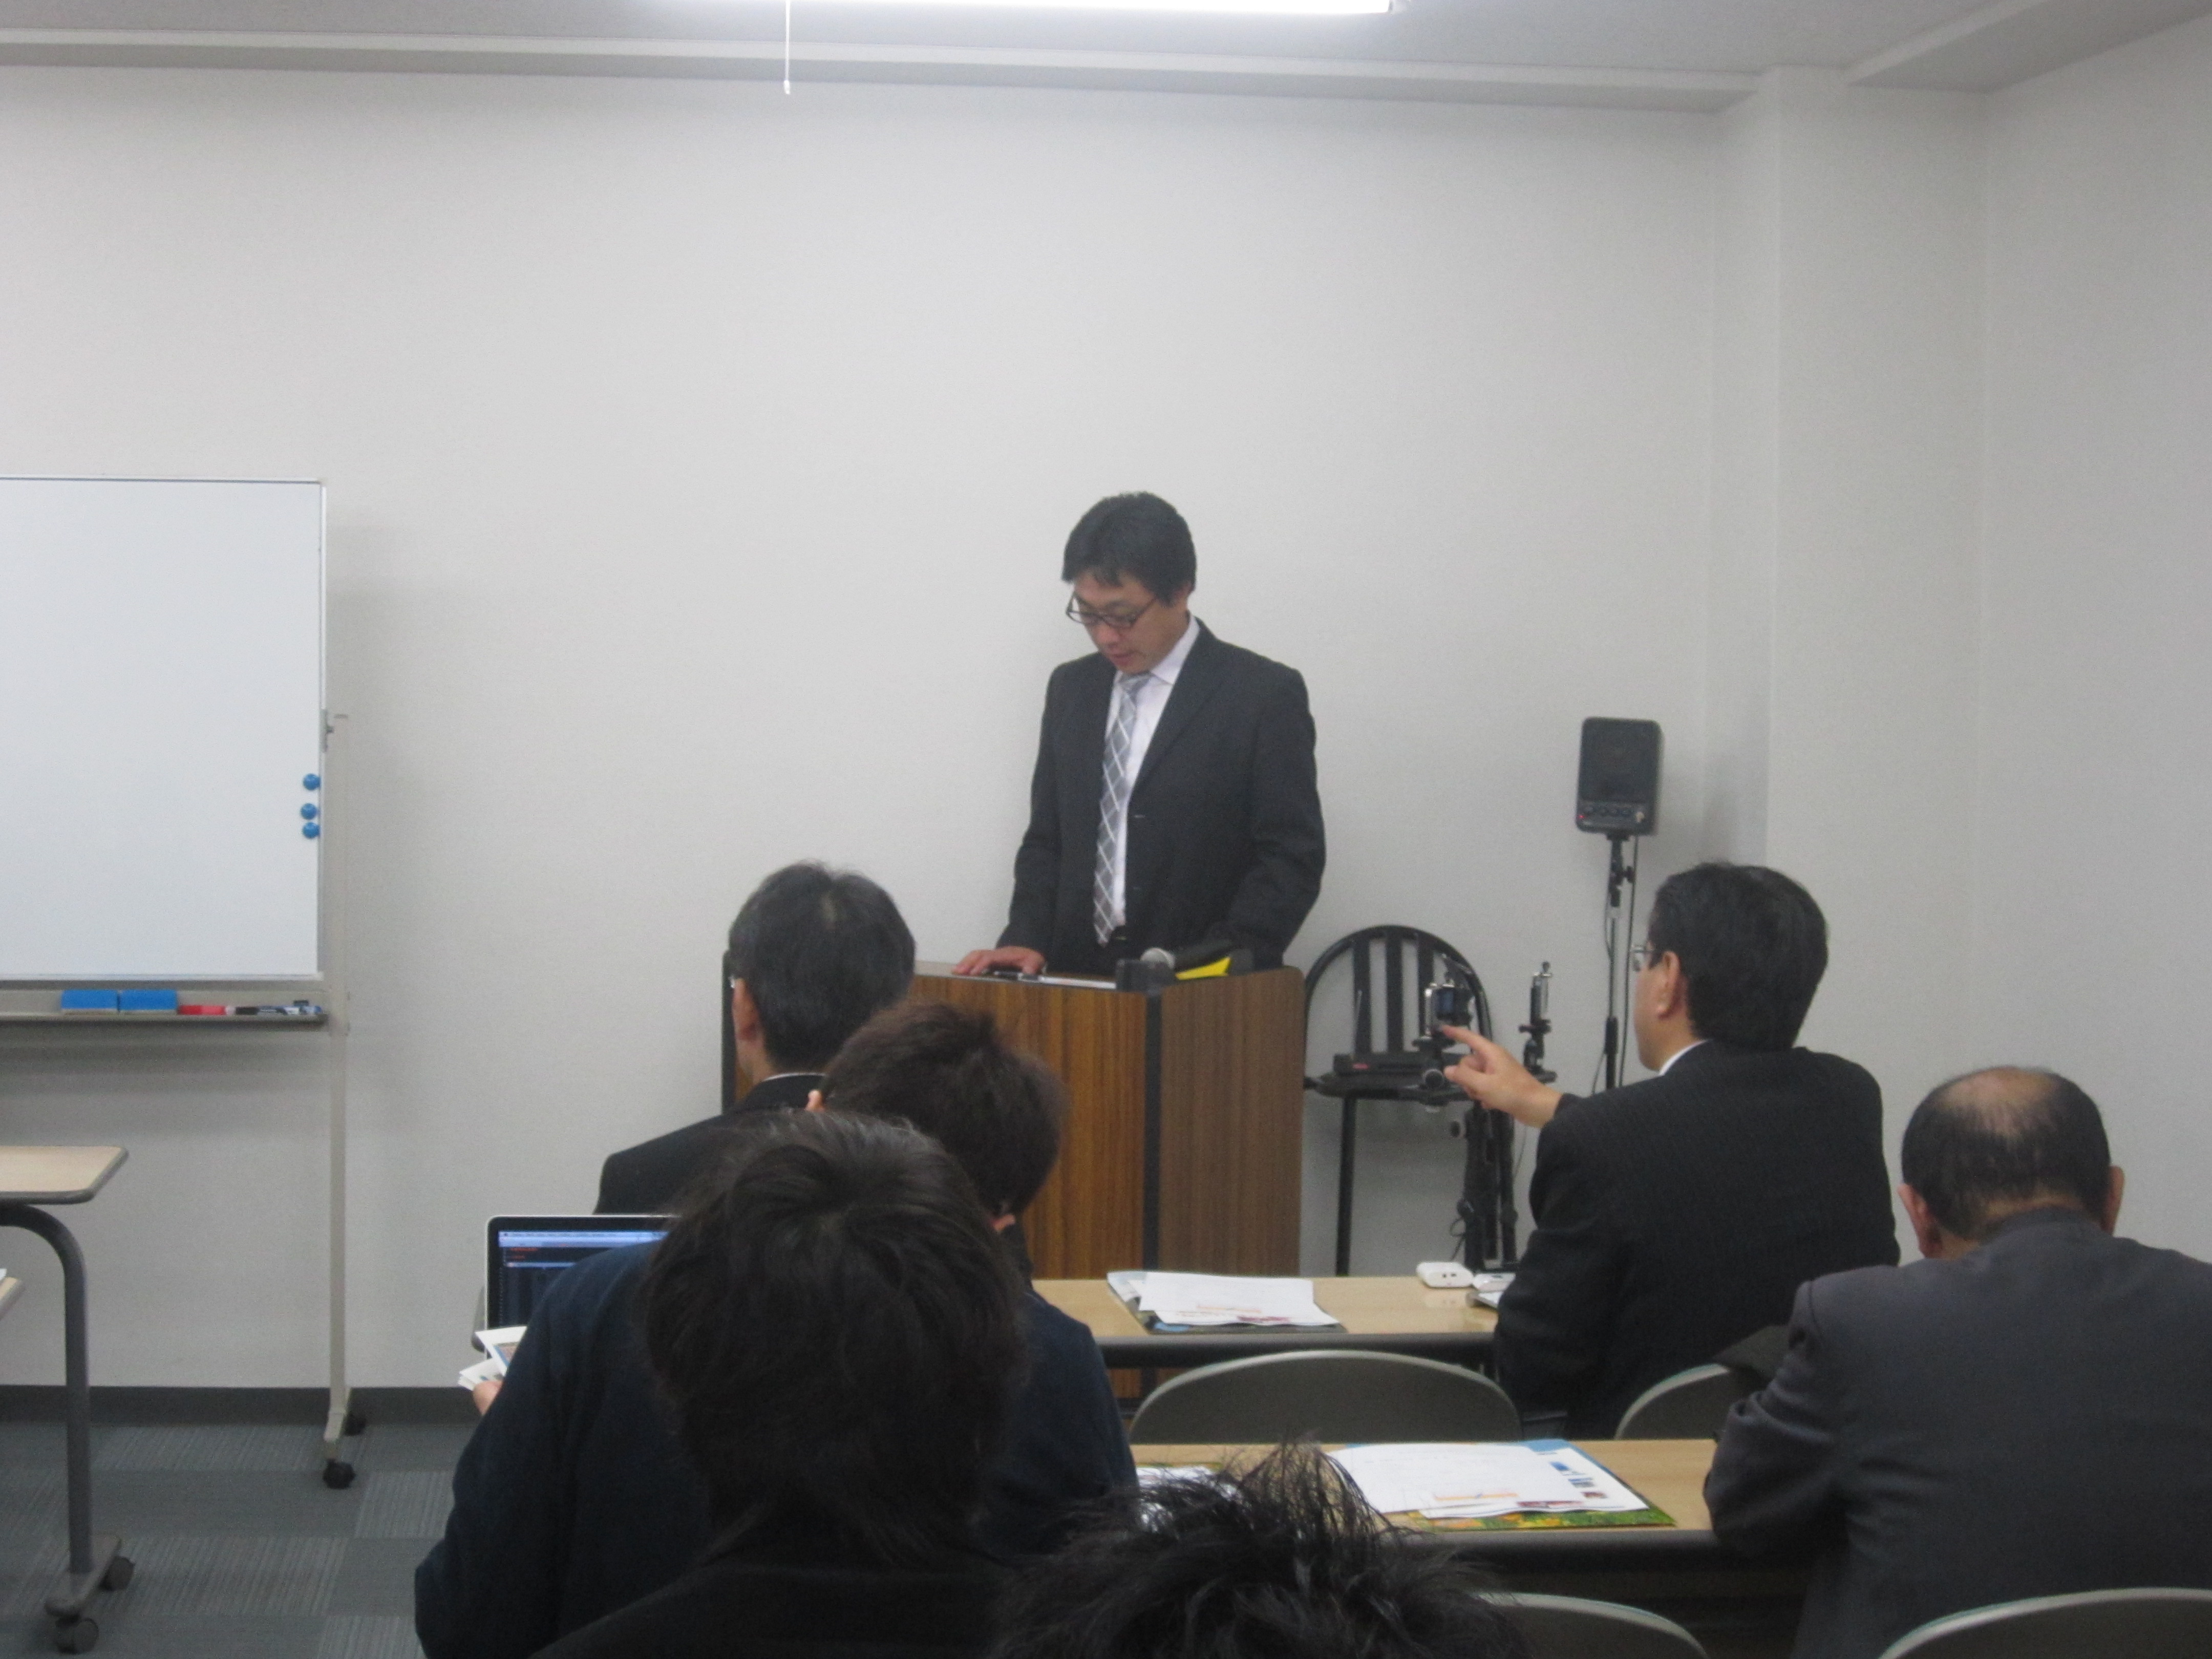 IMG 1888 - 2012年11月27日AOsuki第4回勉強会八戸市小林市長